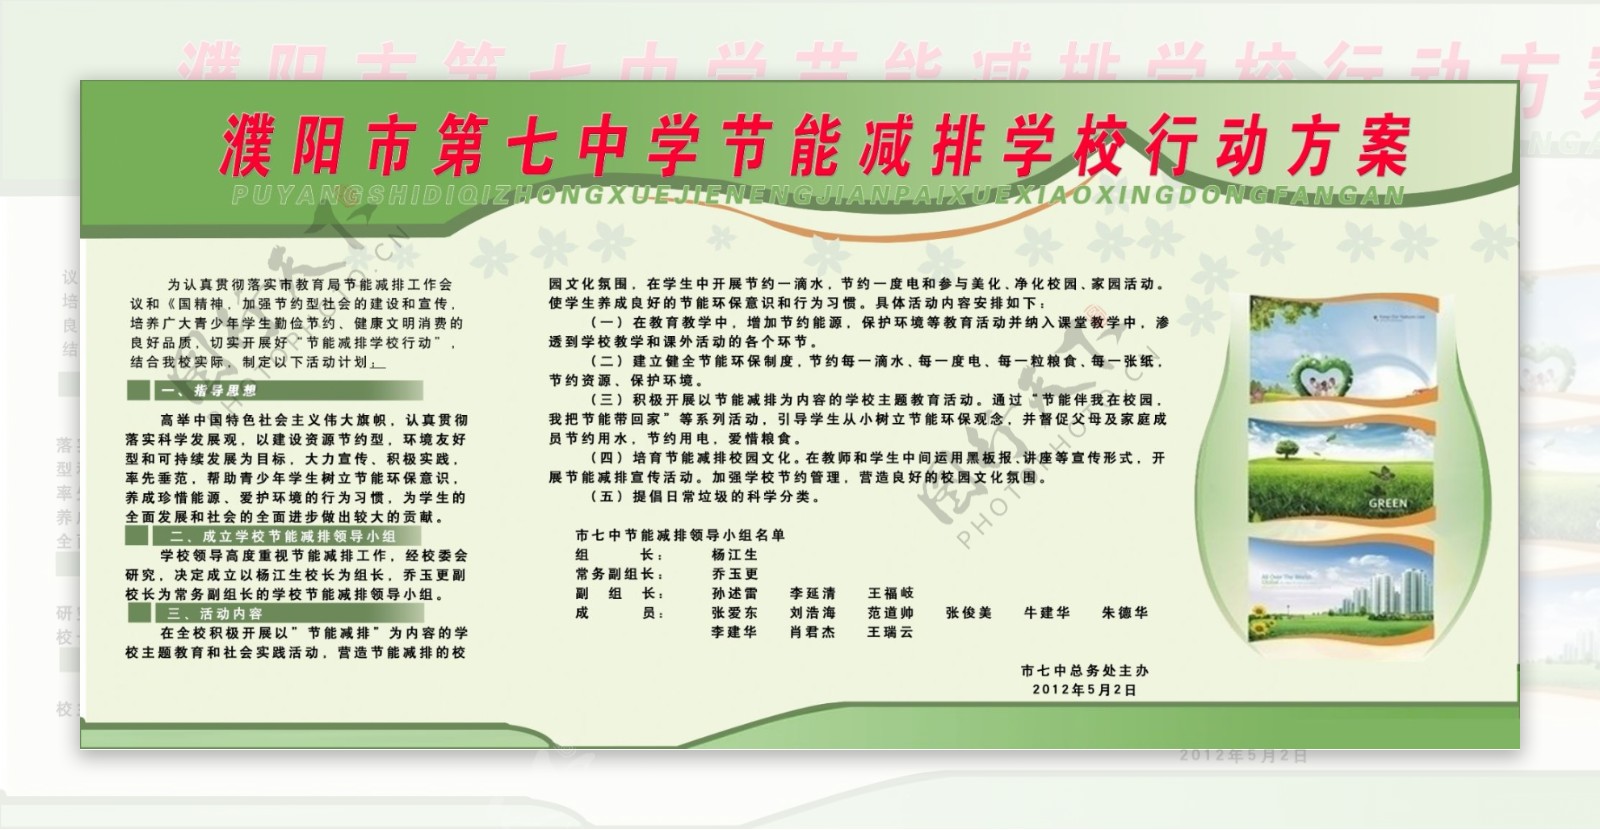 濮阳市第七中学节能减排学校行动方案图片